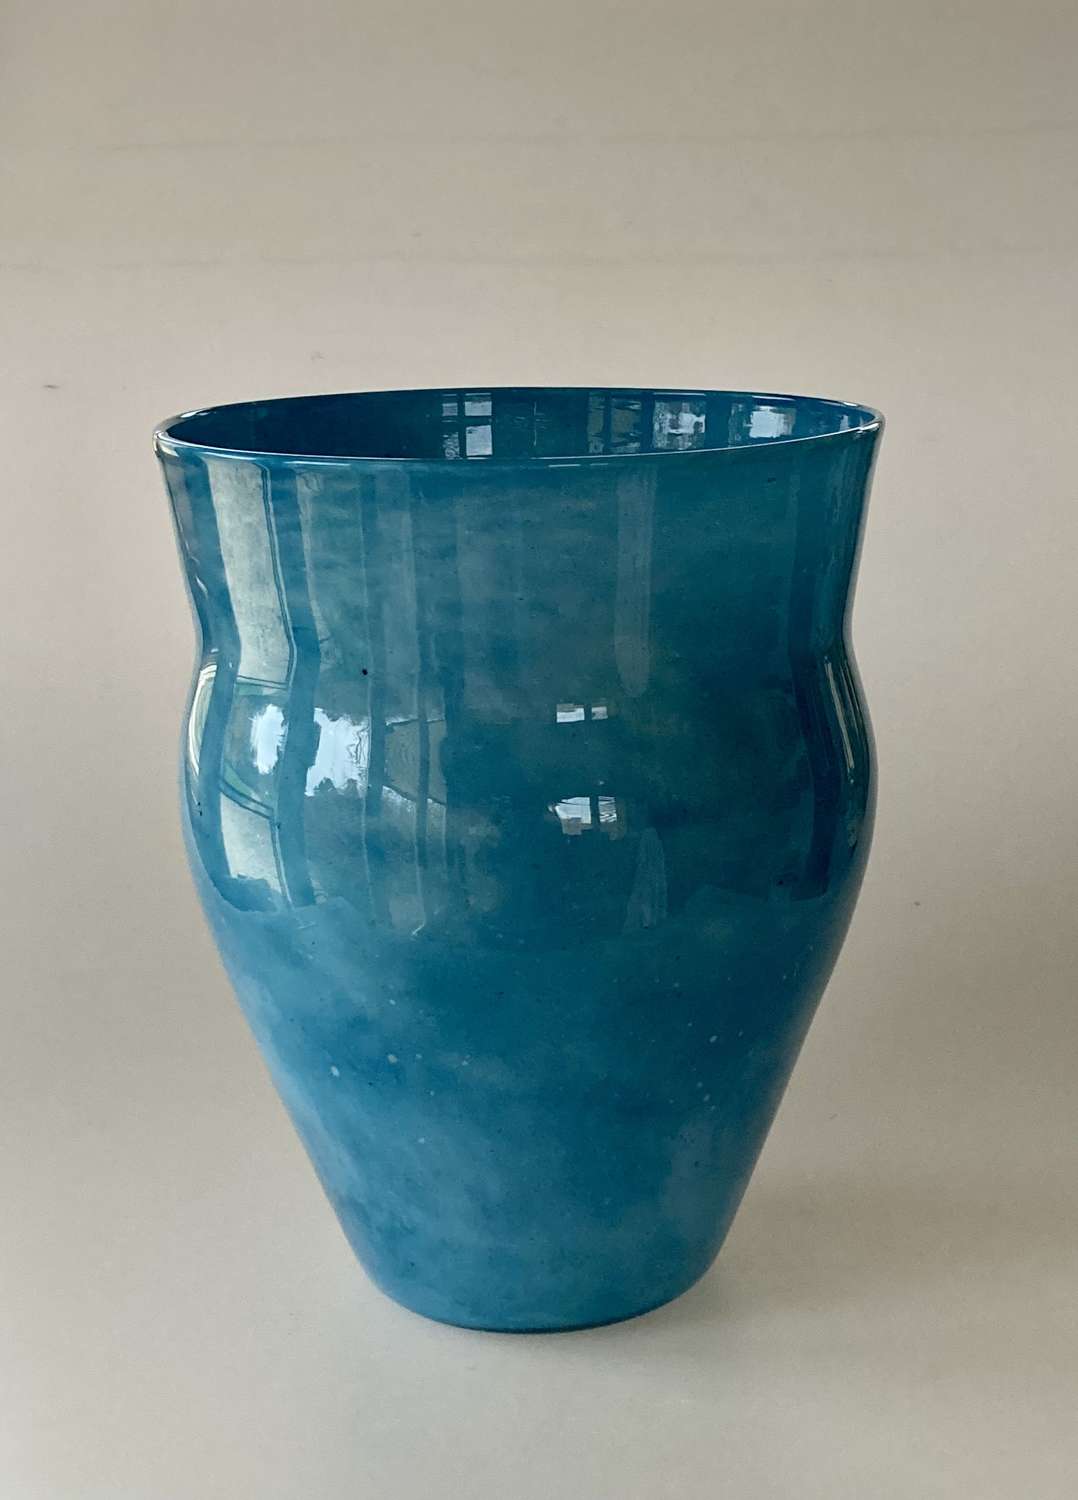 Pale blue cloudy Bronze Age vase